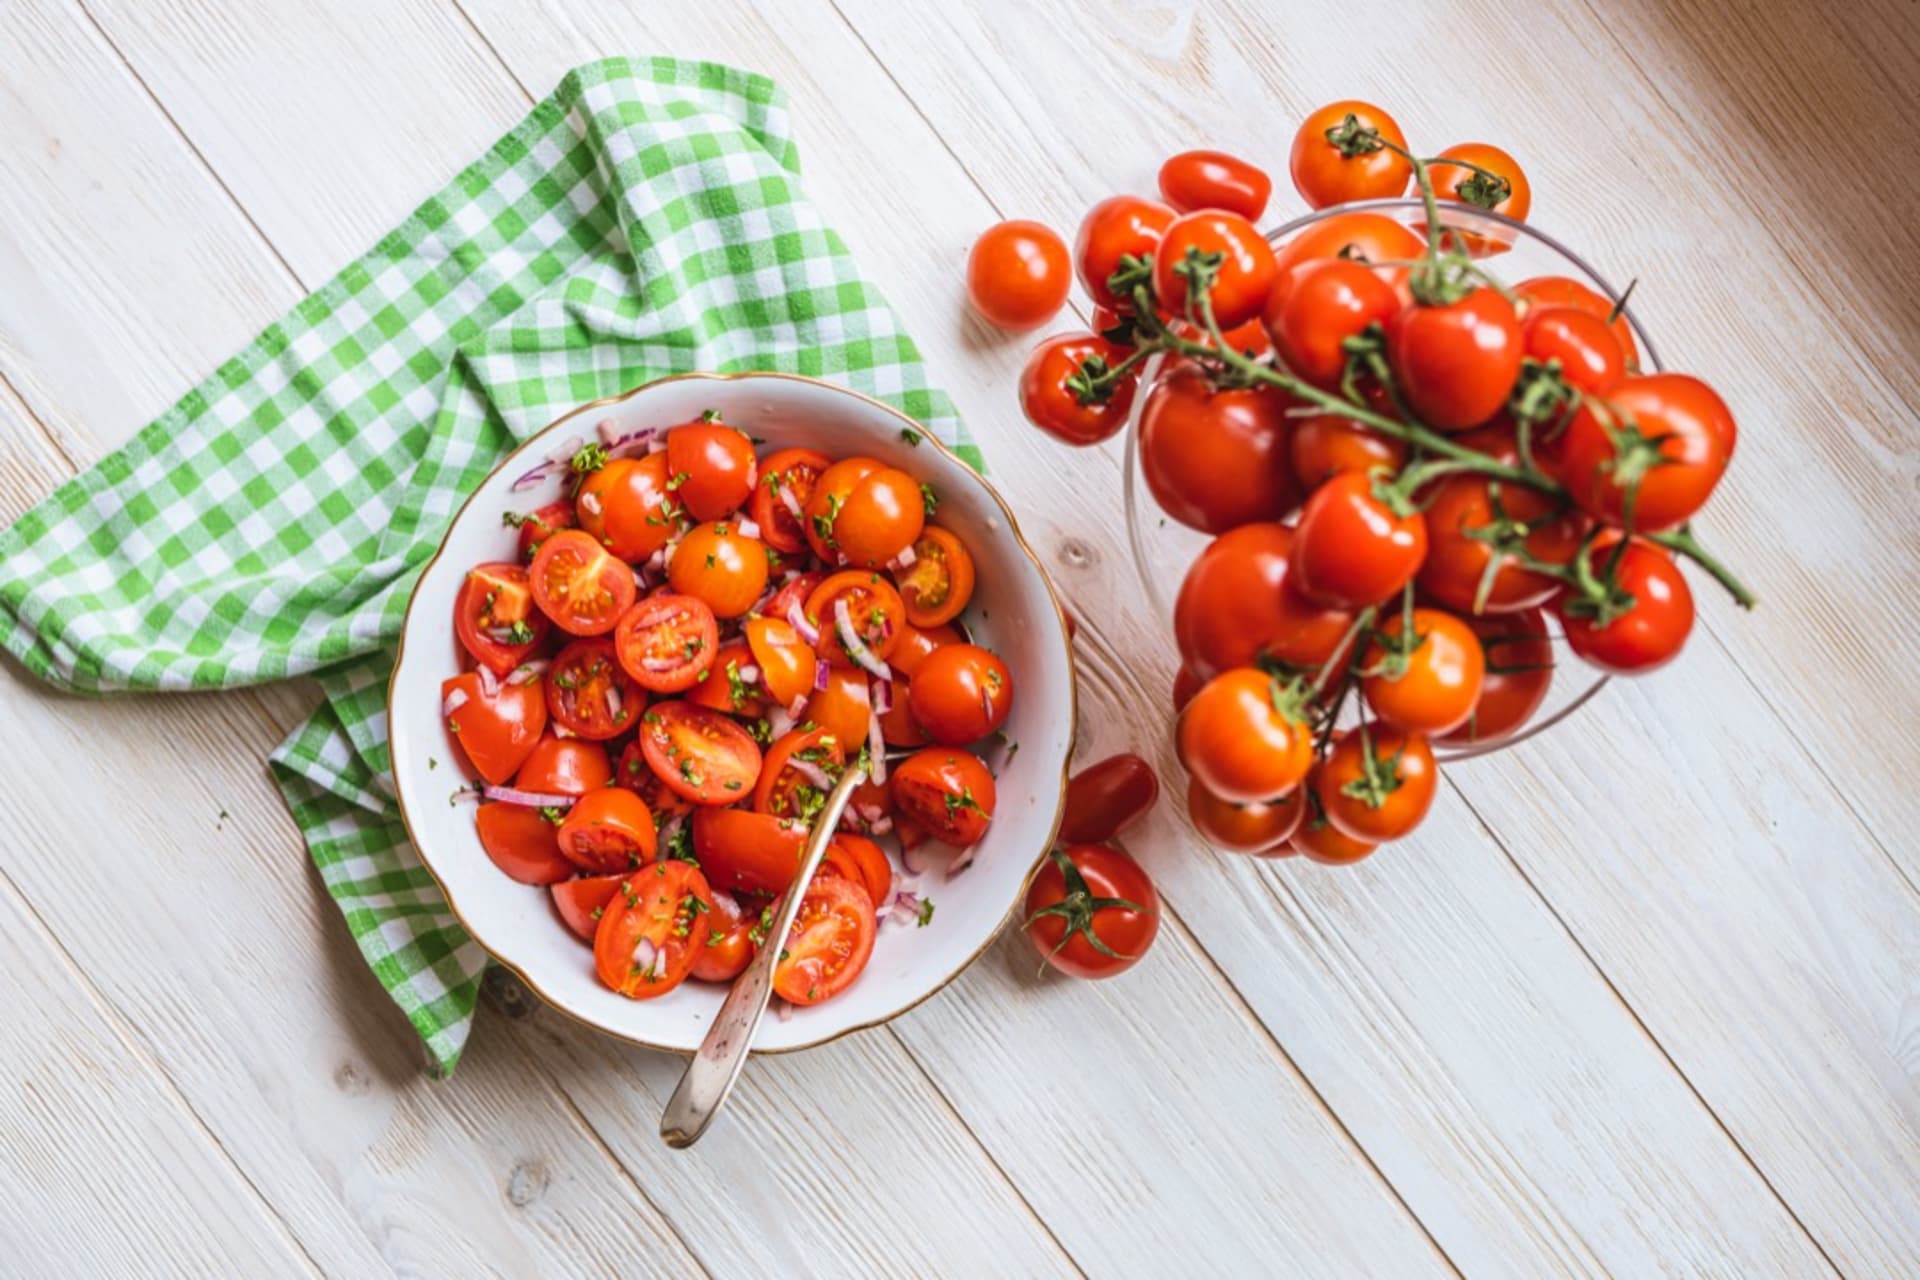 Šťavnatá a voňavá rajčata: Čechy milovaná zelenina 2